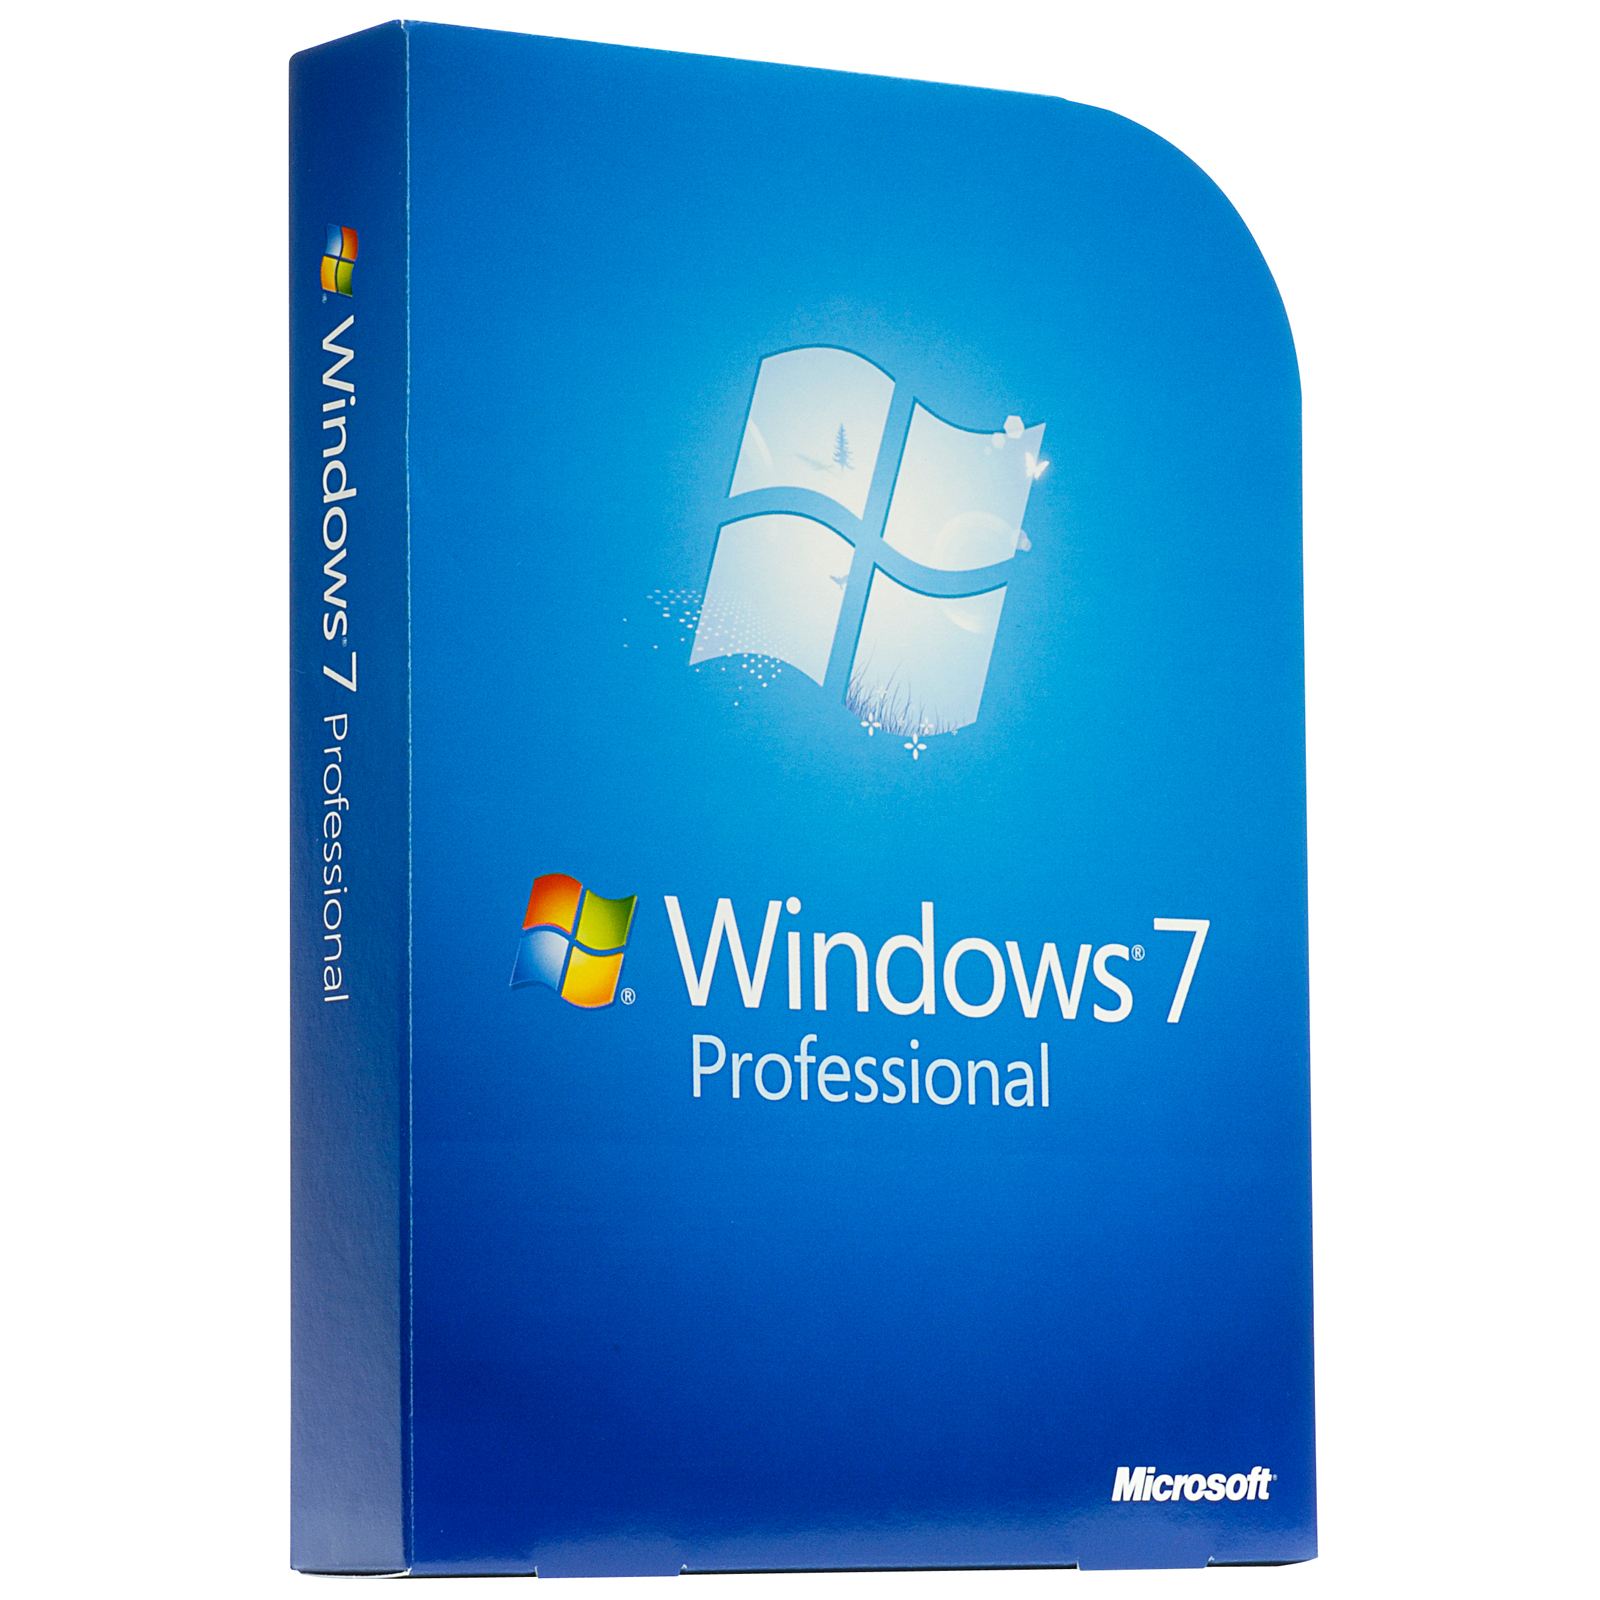 windows 8 iso download 64 bit getintopc